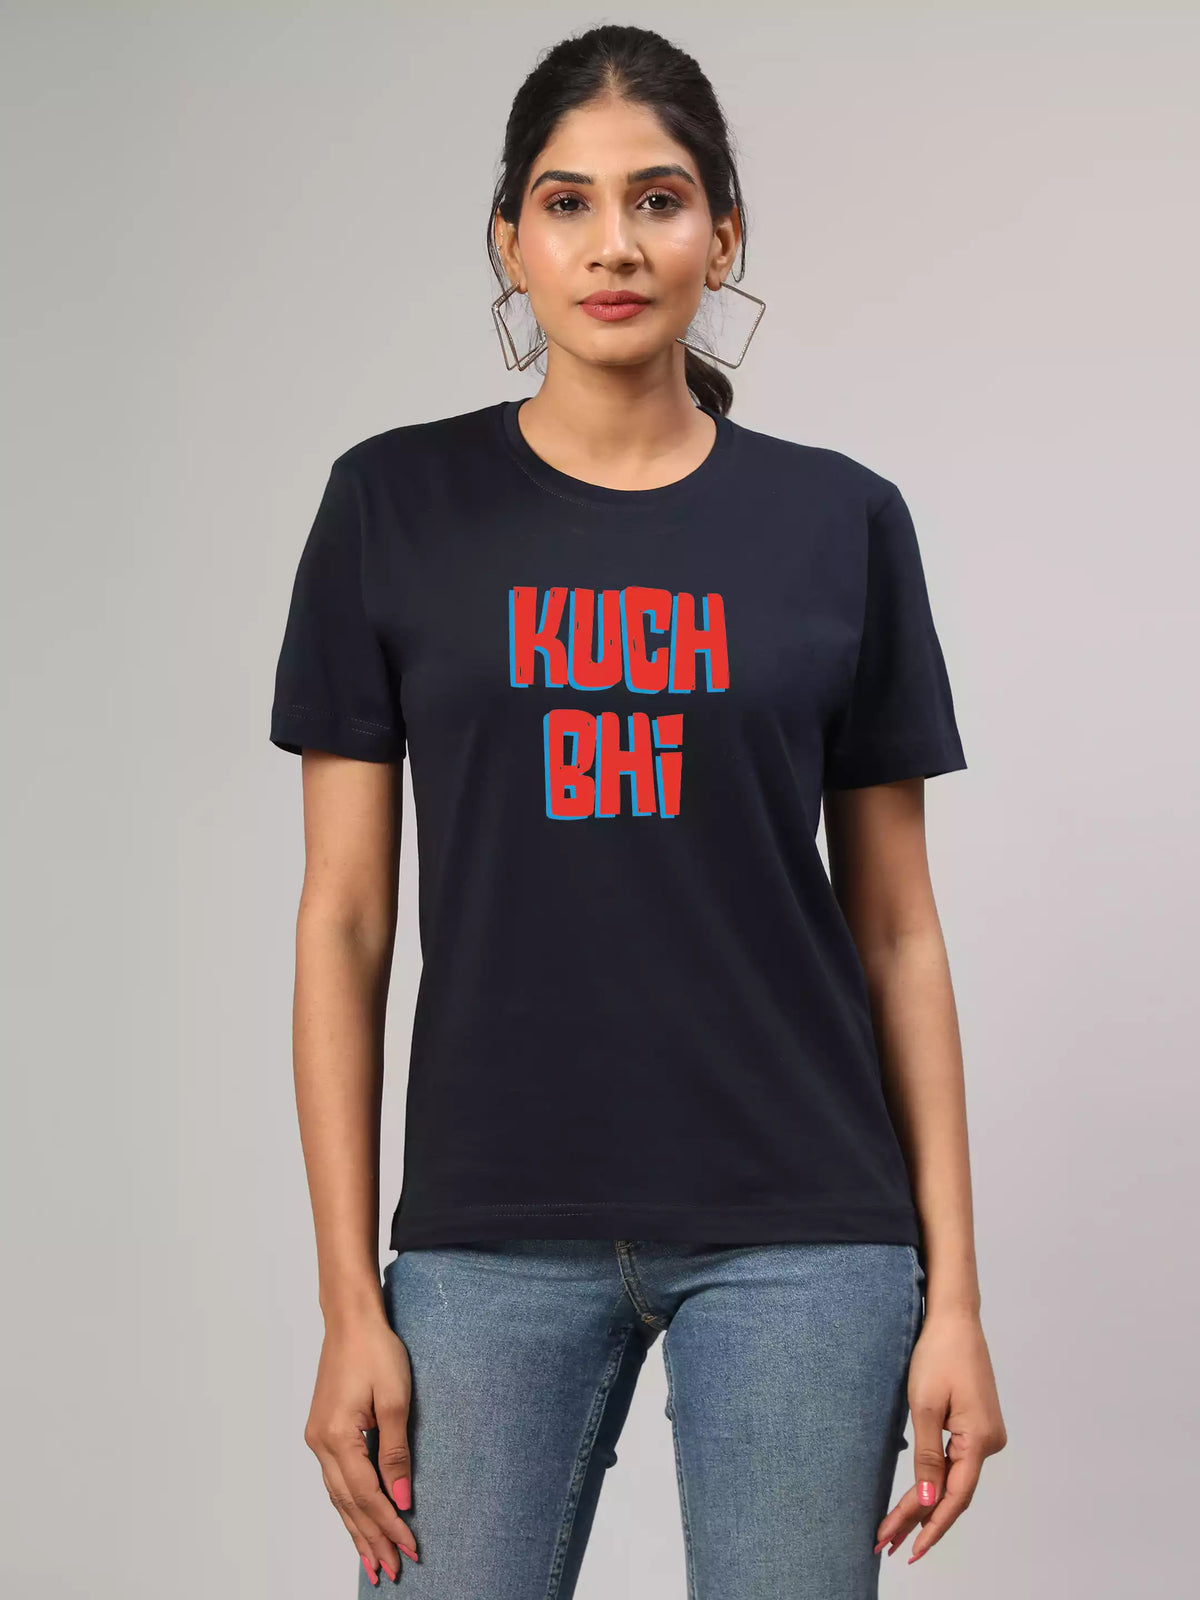 Kuch bhii - Sukhiaatma Unisex Graphic Printed Navy T-shirt